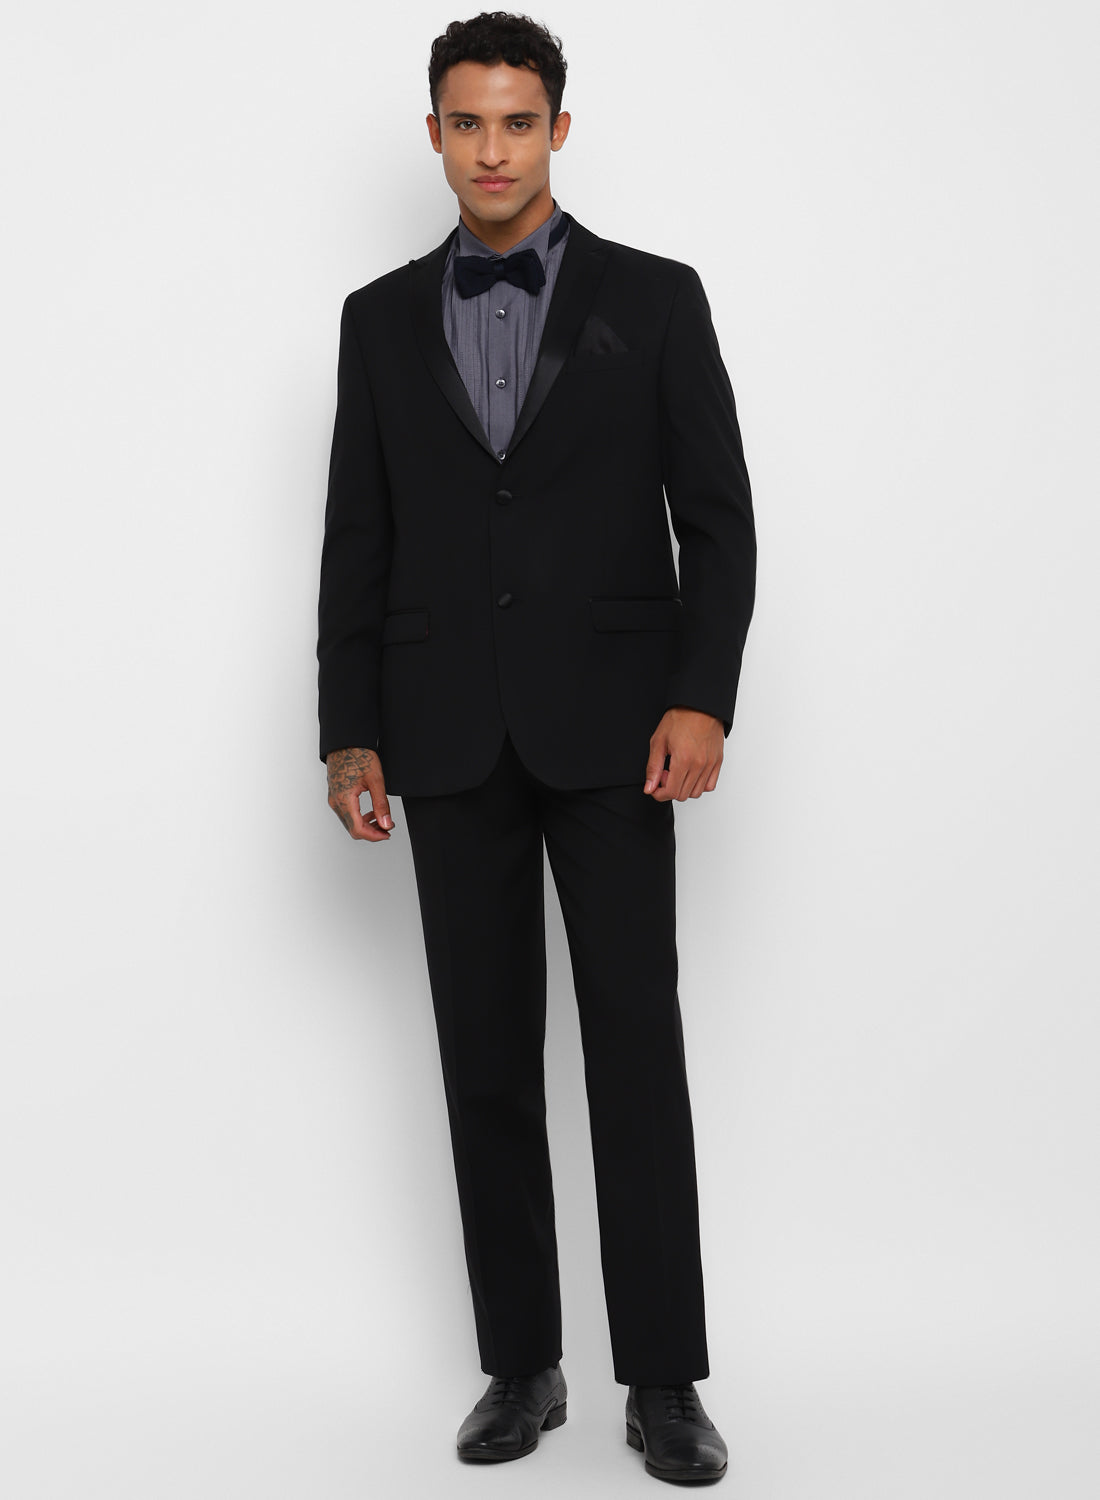 Black Tuxedo 2pcs suit